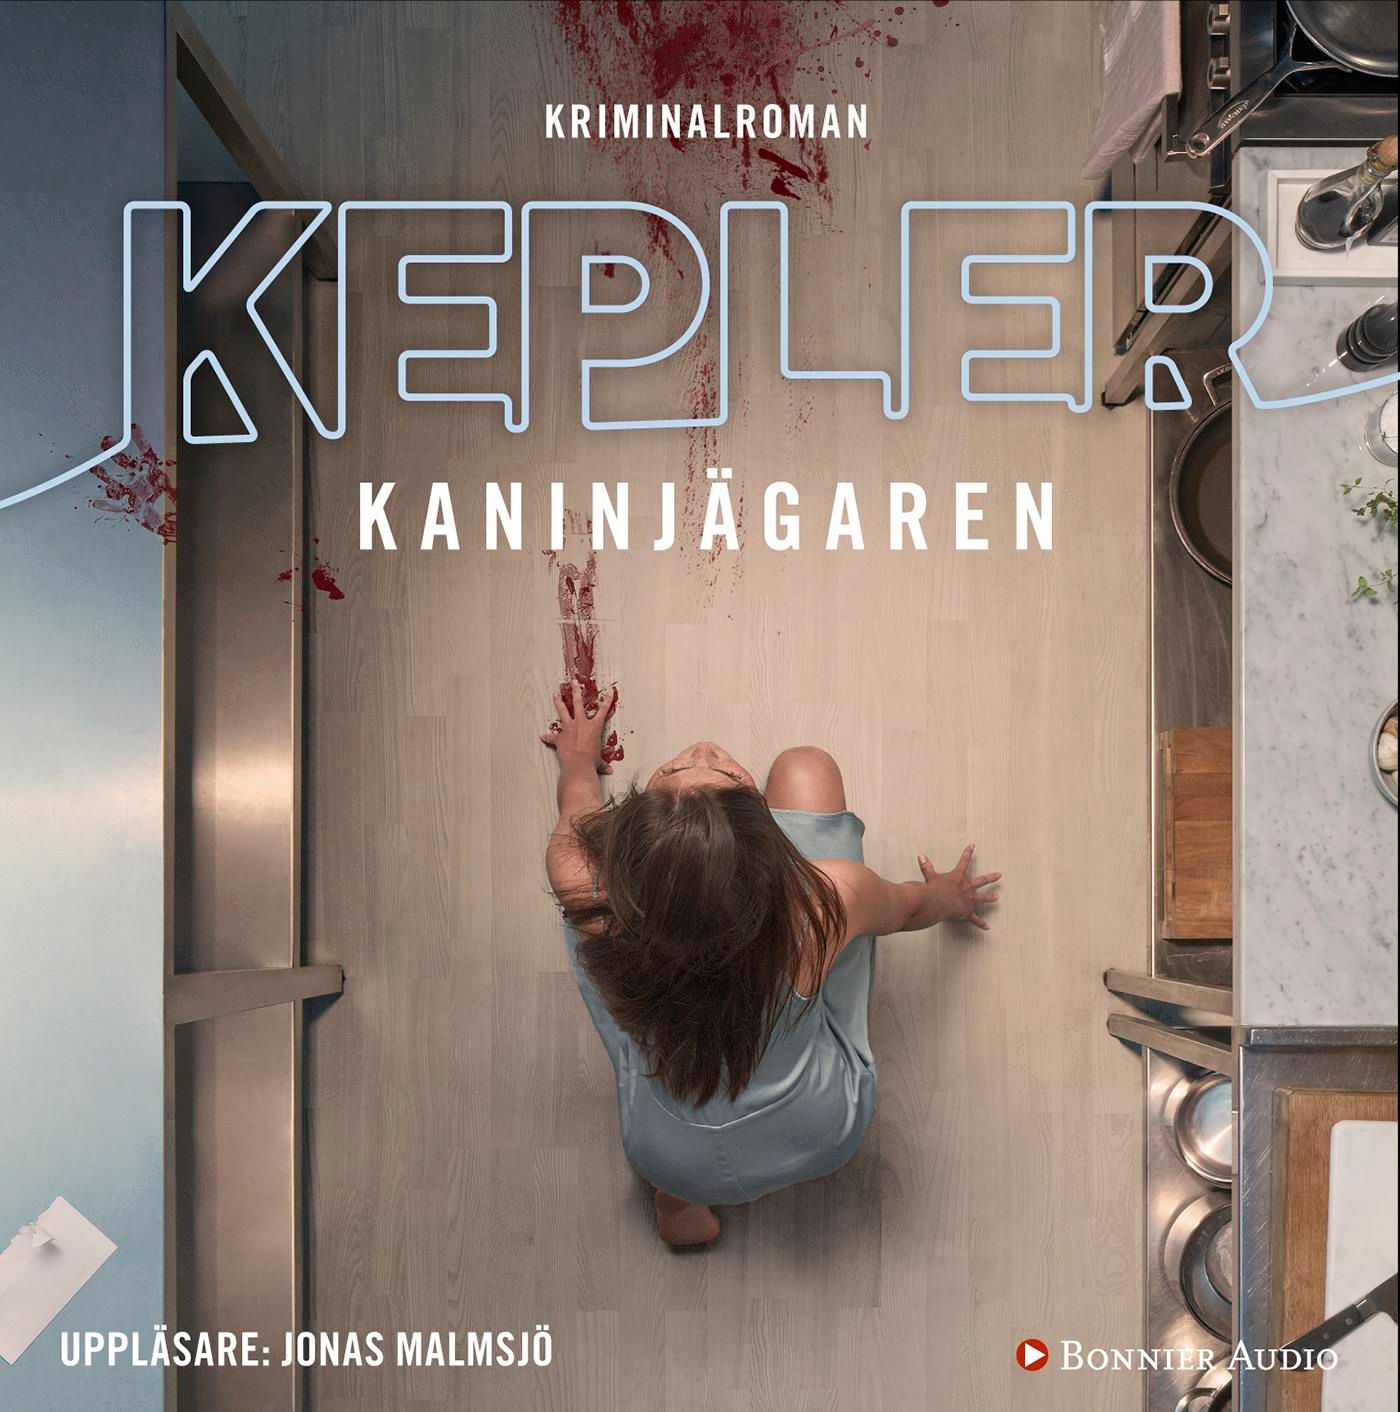 Kaninjägaren, audiobook by Lars Kepler